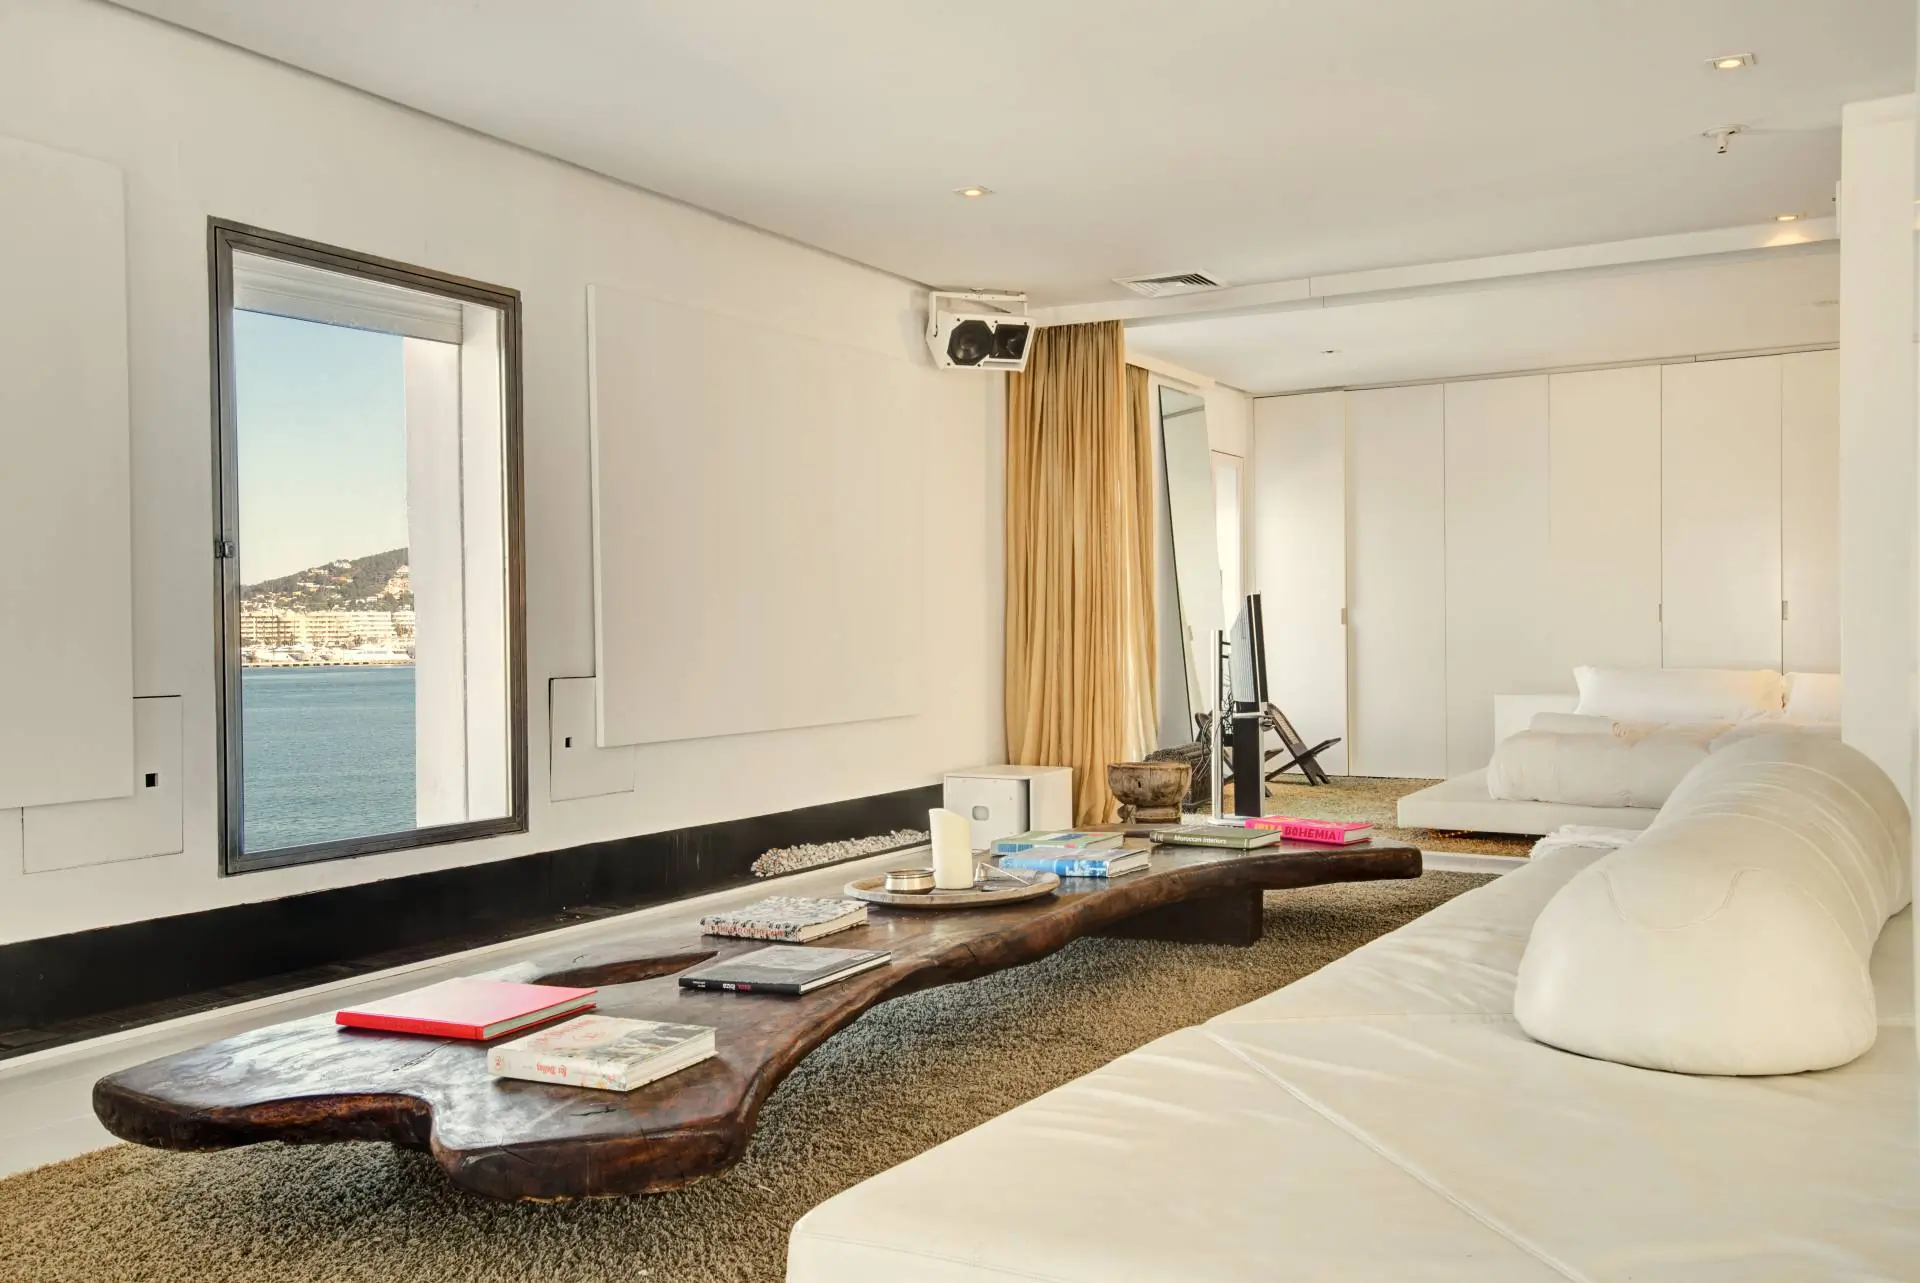 Impresionante loft en el puerto de Ibiza con vistas espectaculares al mar para comprar